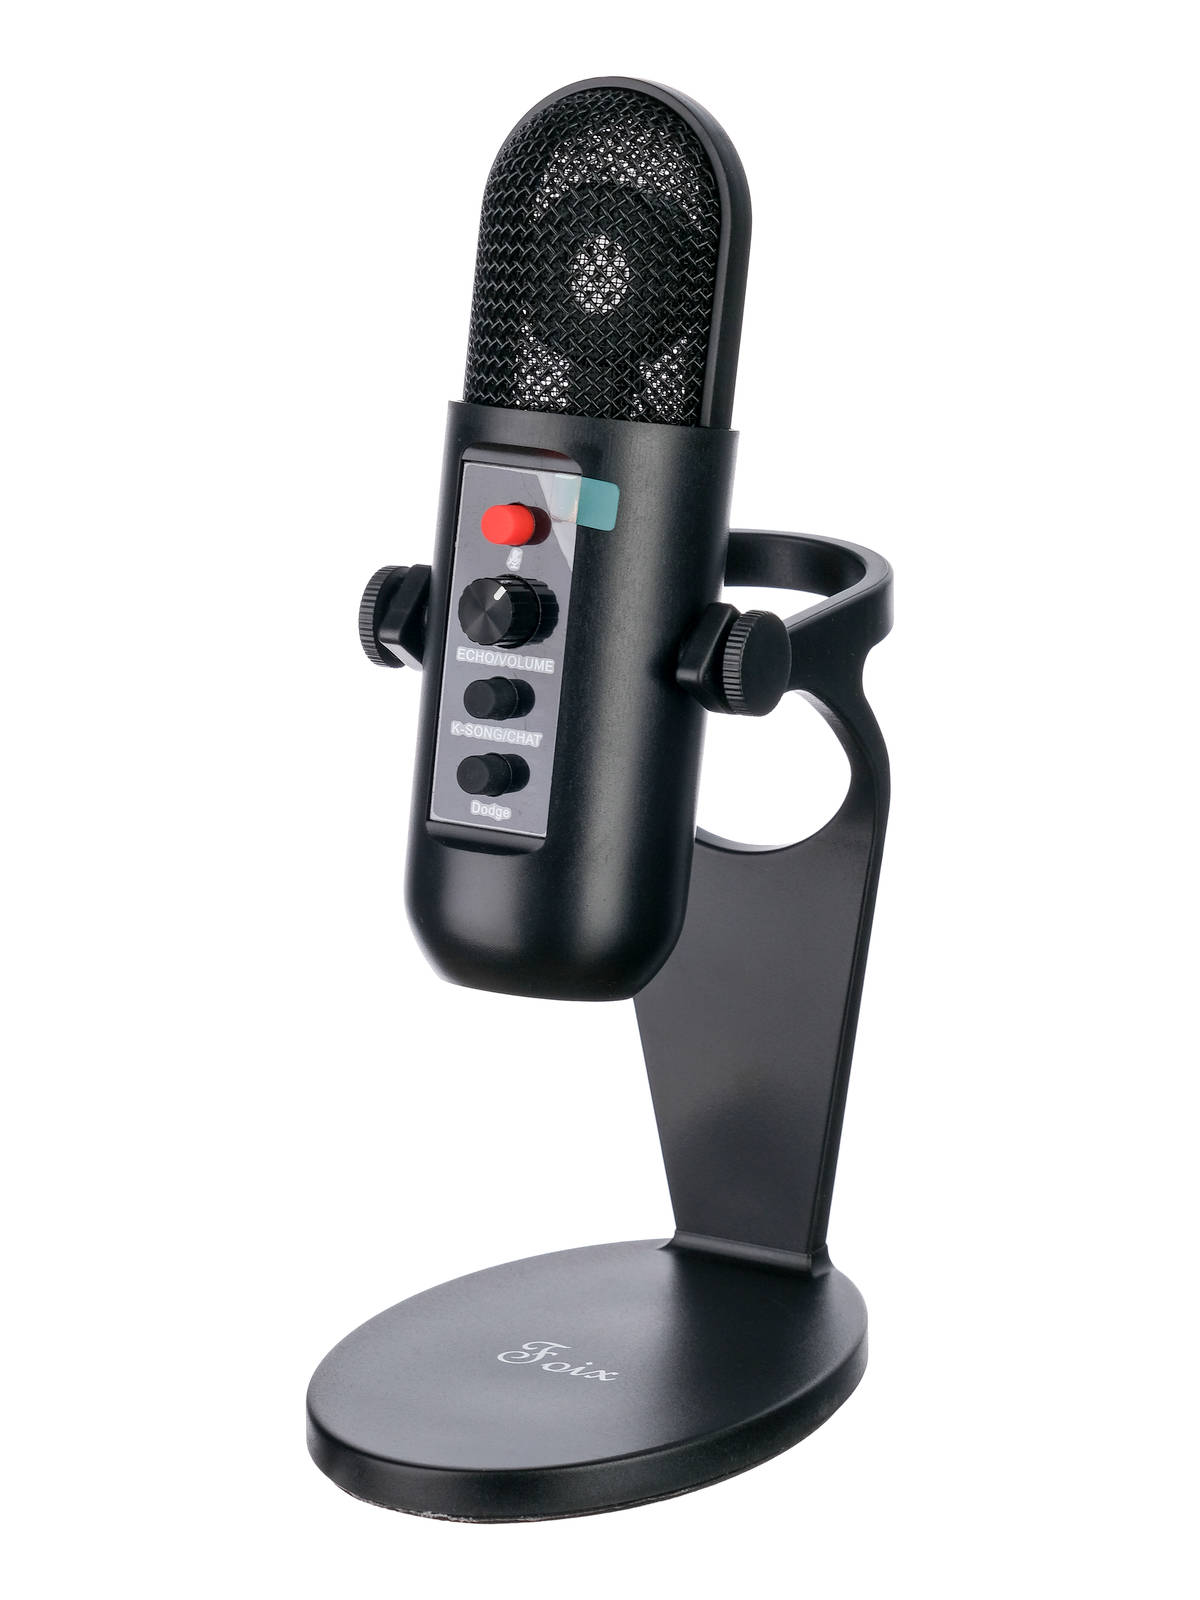 USB микрофоны, Броадкаст-системы Foix K-6-Foix многофункциональная живая звуковая карта для пения прямой трансляции записи голоса и музыки